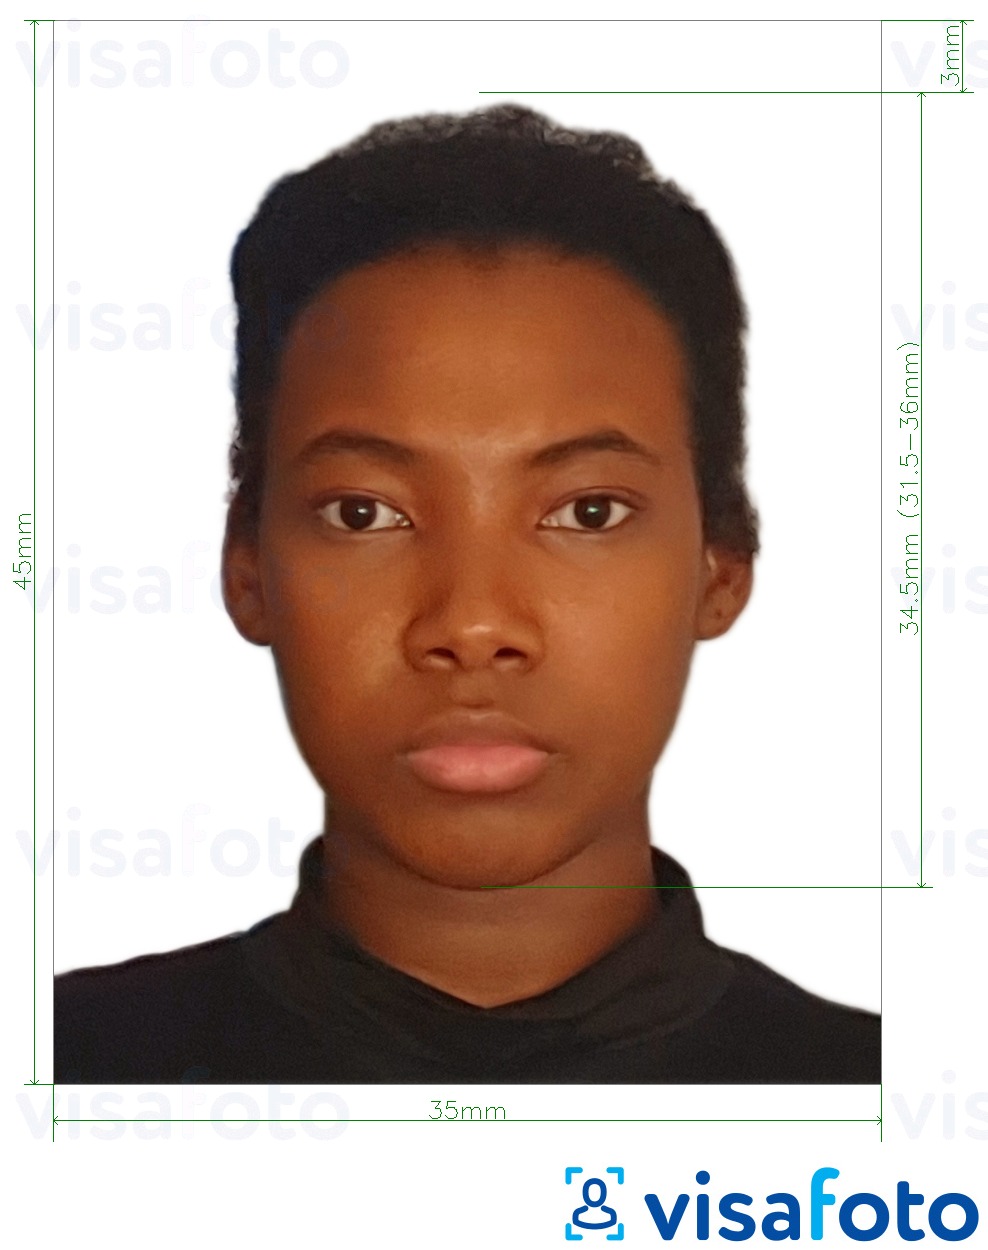 Contoh foto untuk Equatorial Guinea visa 35x45 mm (3.5x4.5 cm) dengan spesifikasi saiz yang tepat.